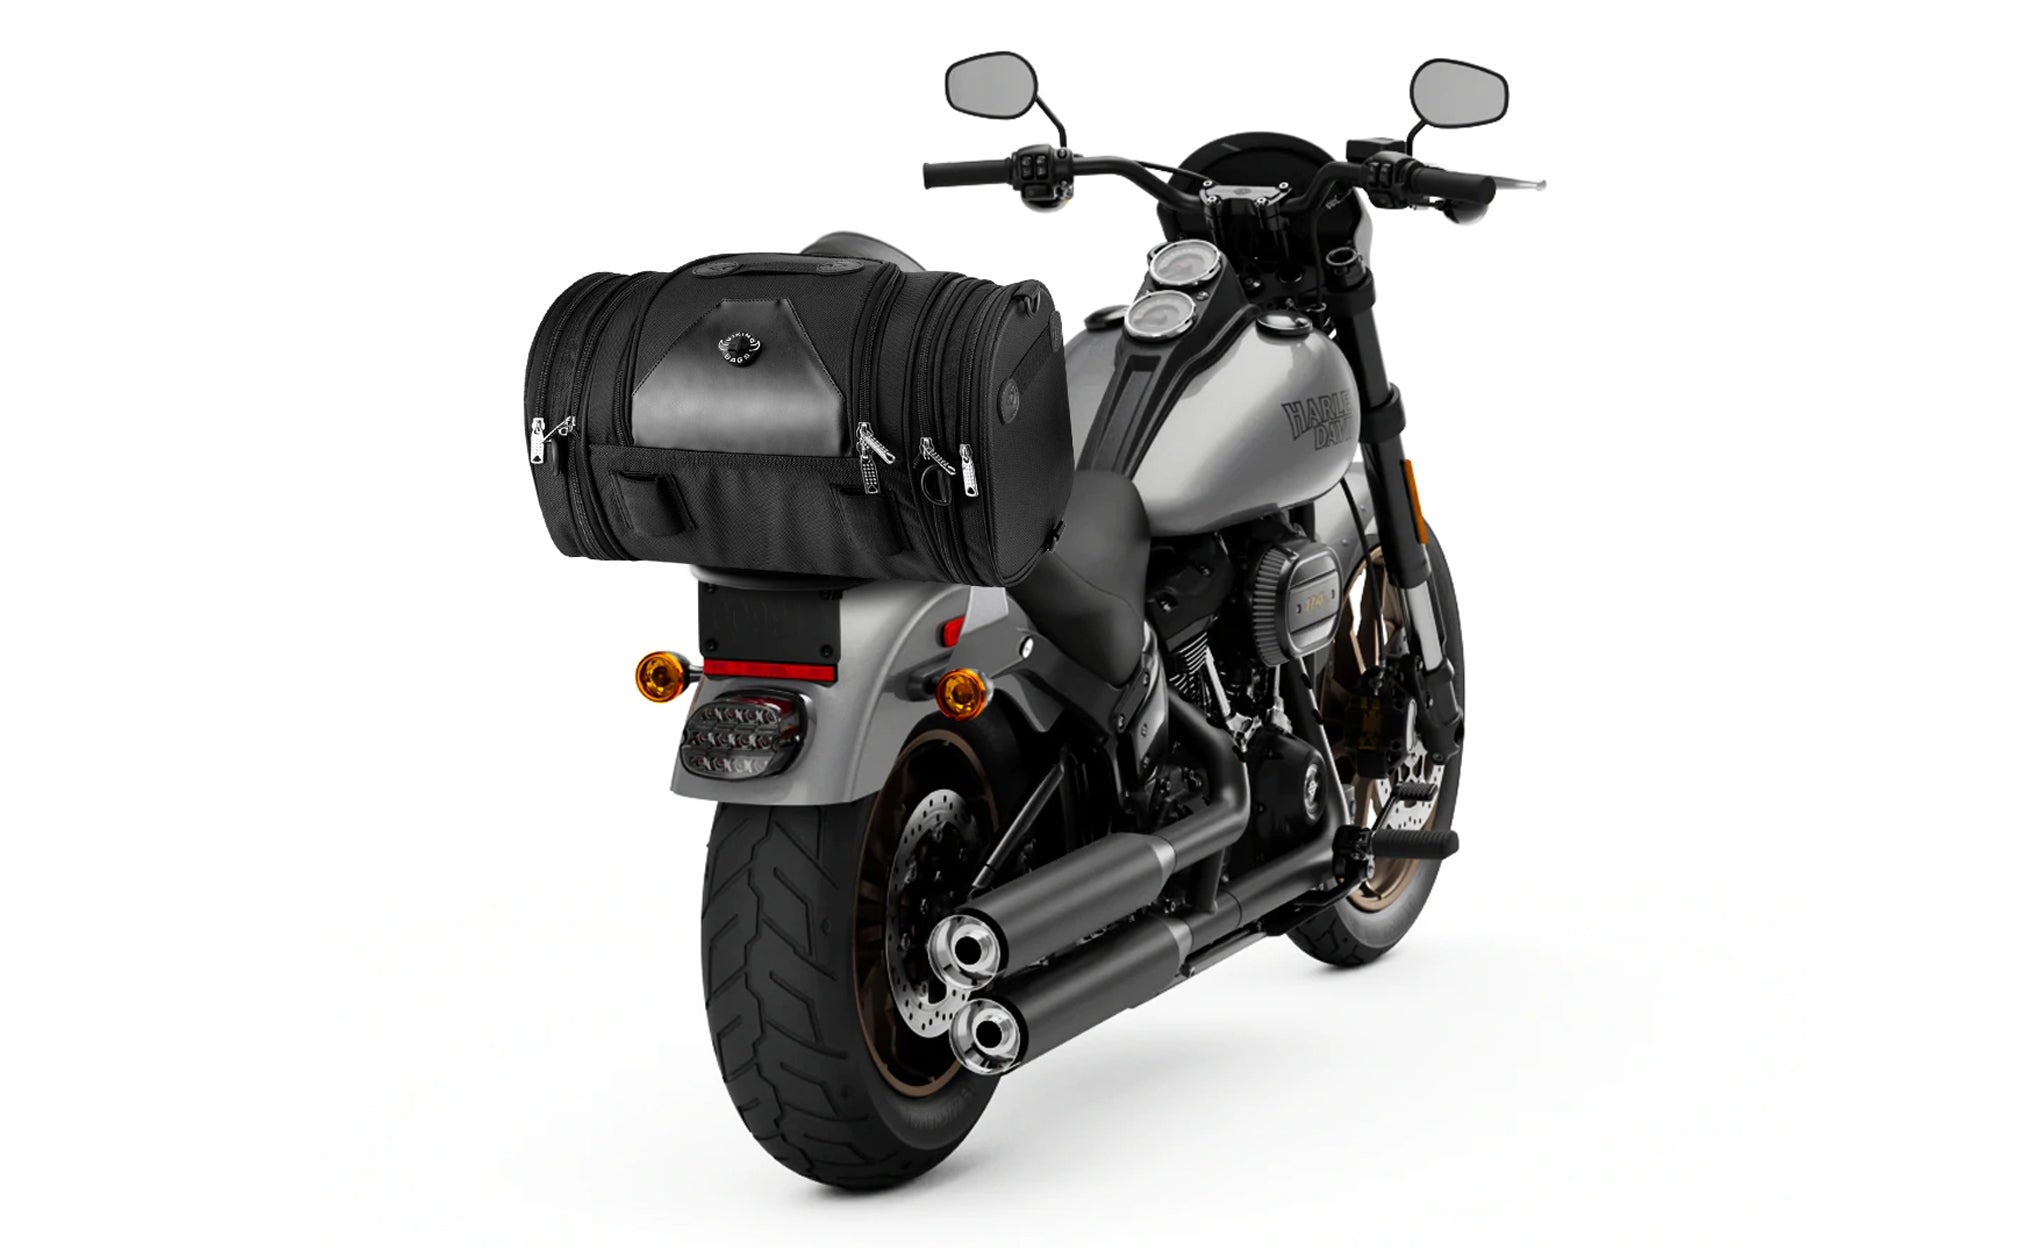 Viking Axwell Small Kawasaki Motorcycle Tail Bag Bag on Bike View @expand